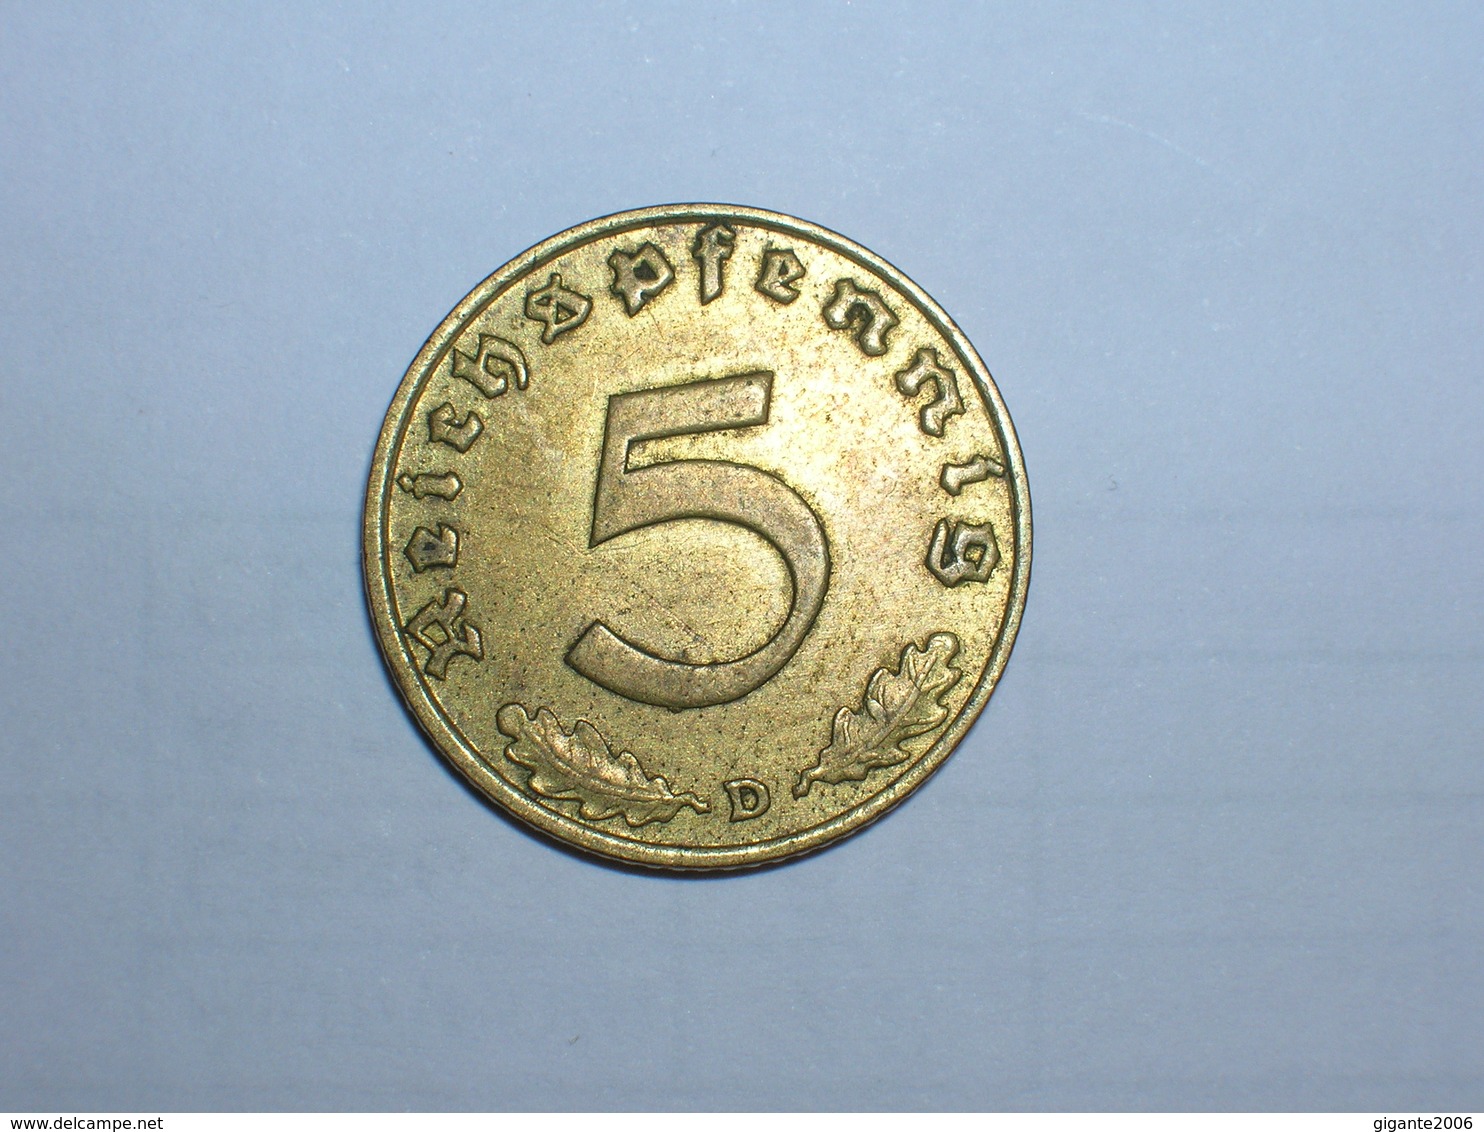 ALEMANIA- 5 PFENNIG 1936 D (890) - 5 Reichspfennig